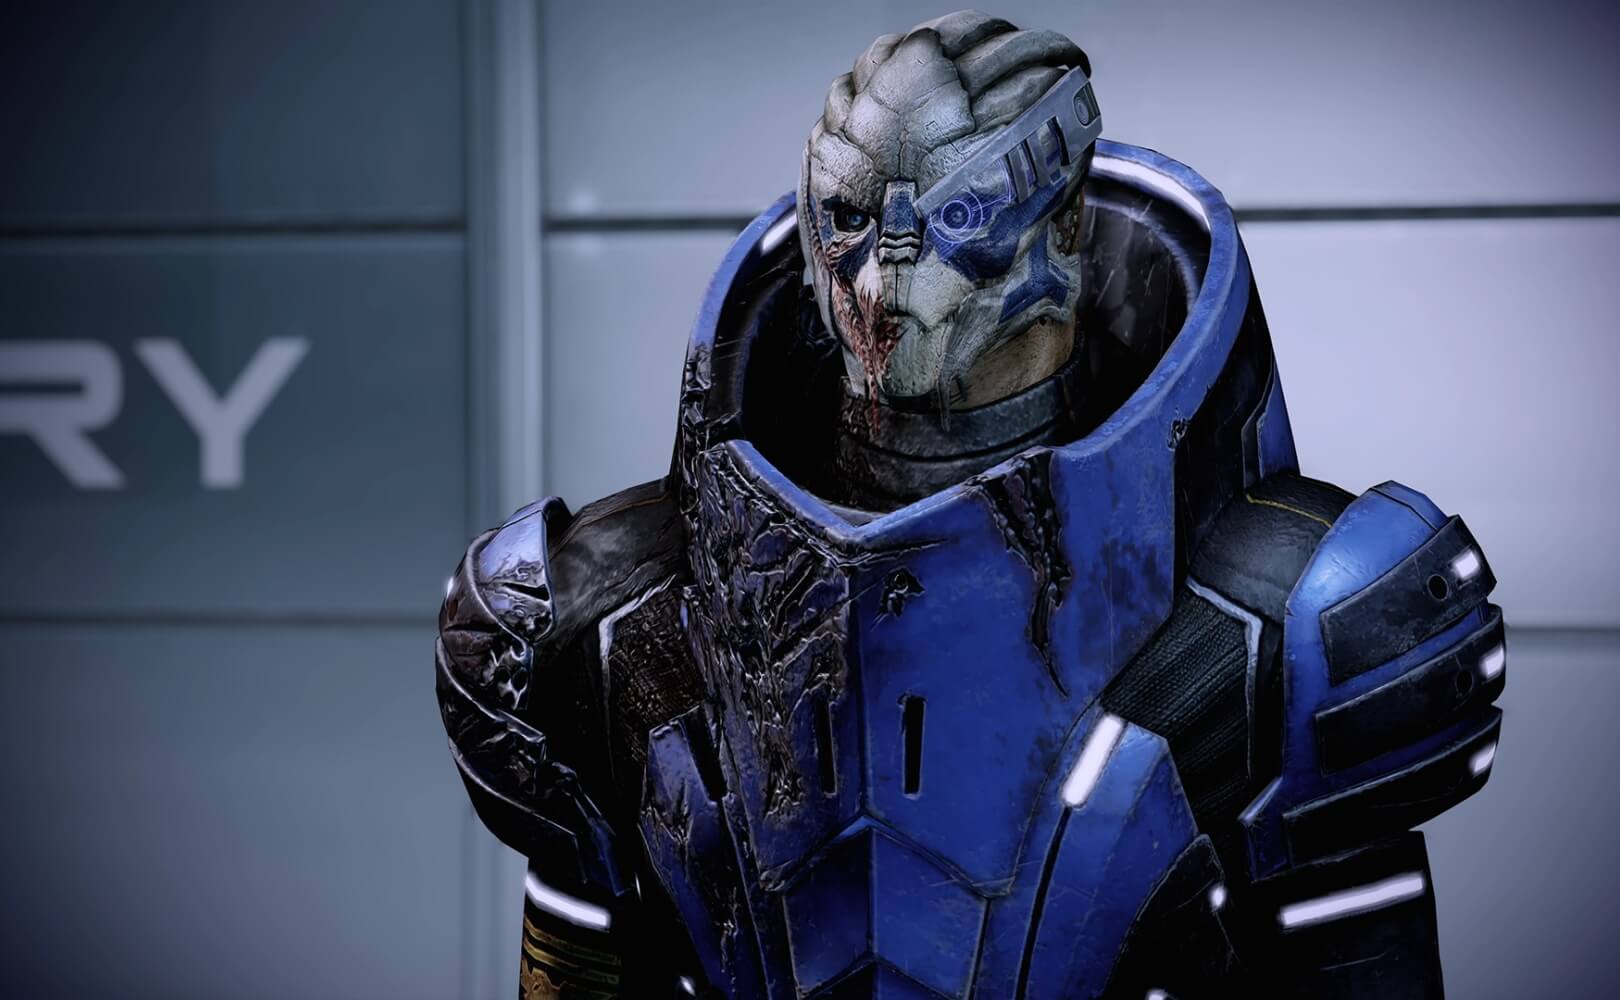 Co wyjdzie z połączenia "No Man's Sky" i "Mass Effect"?